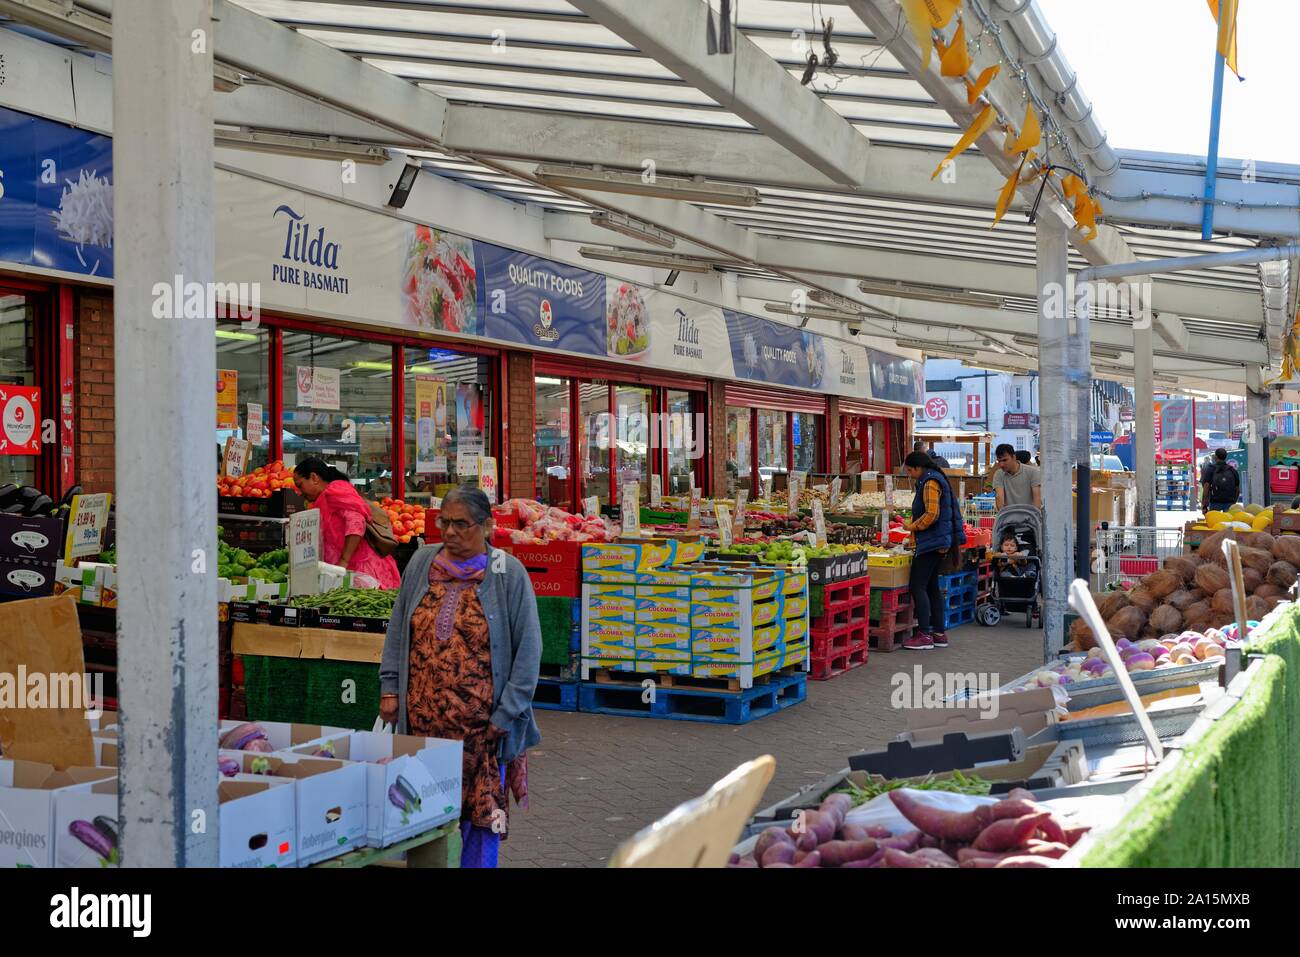 Una frutta e verdura aria aperta sul mercato South Street, Southall West London Inghilterra England Regno Unito Foto Stock